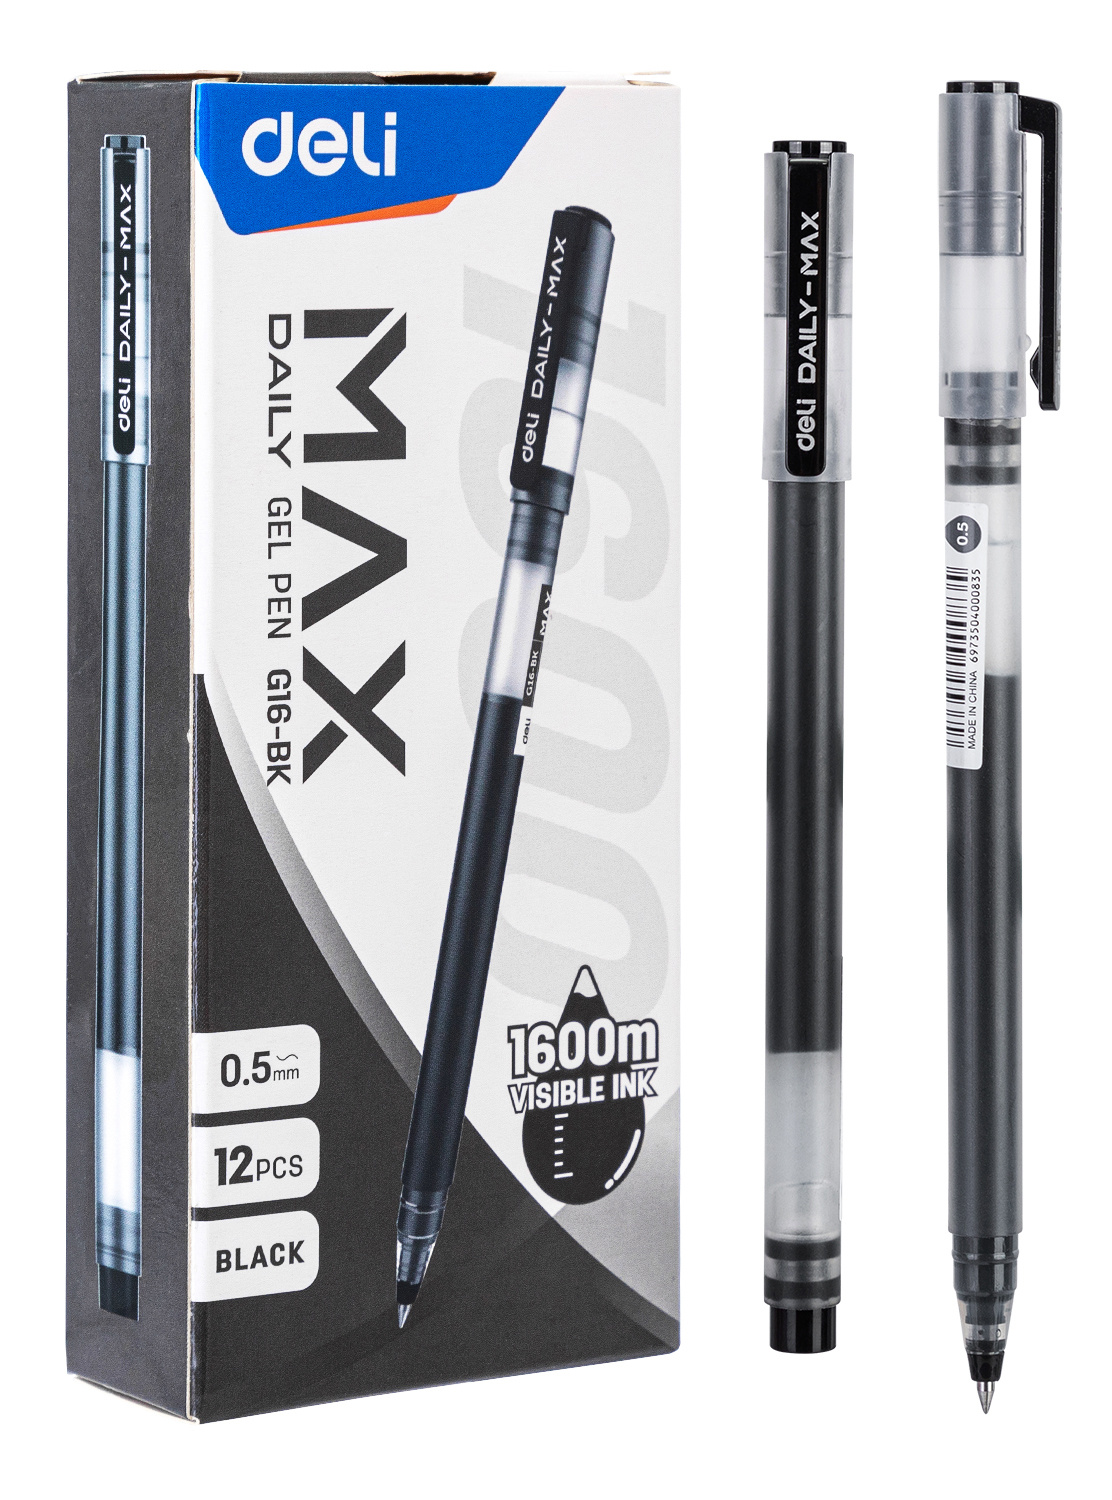 Ручка гелев. Deli Daily Max EG16-BK черн/прозрачный d=0.5мм черн. черн.